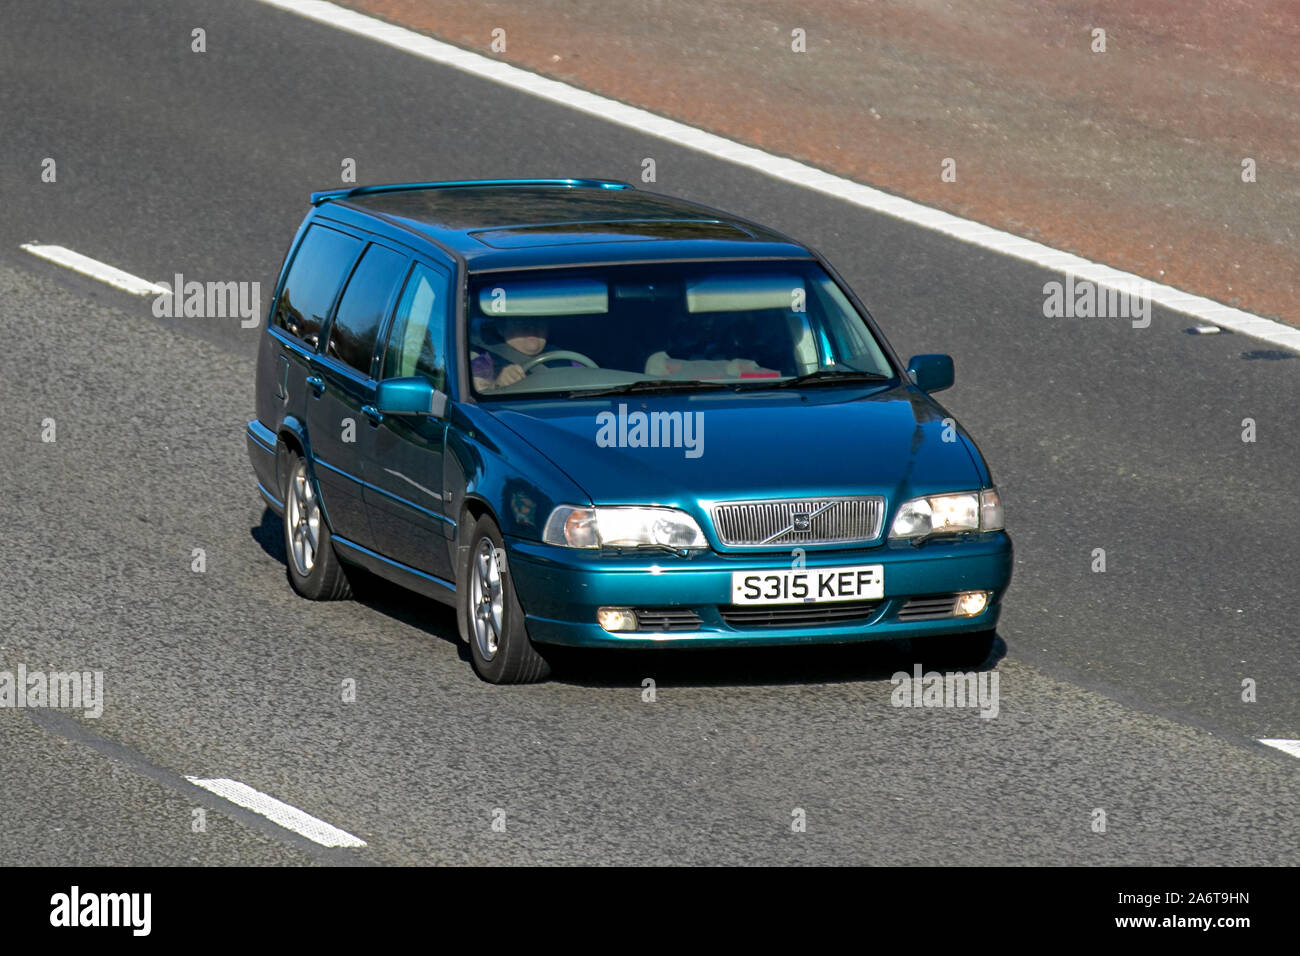 1998 Volvo V70 CD 10V Auto; Großbritannien Verkehr, Transport, moderne Fahrzeuge, Limousinen, Süd - auf die 3 spurige Autobahn M6 Autobahn gebunden. Stockfoto